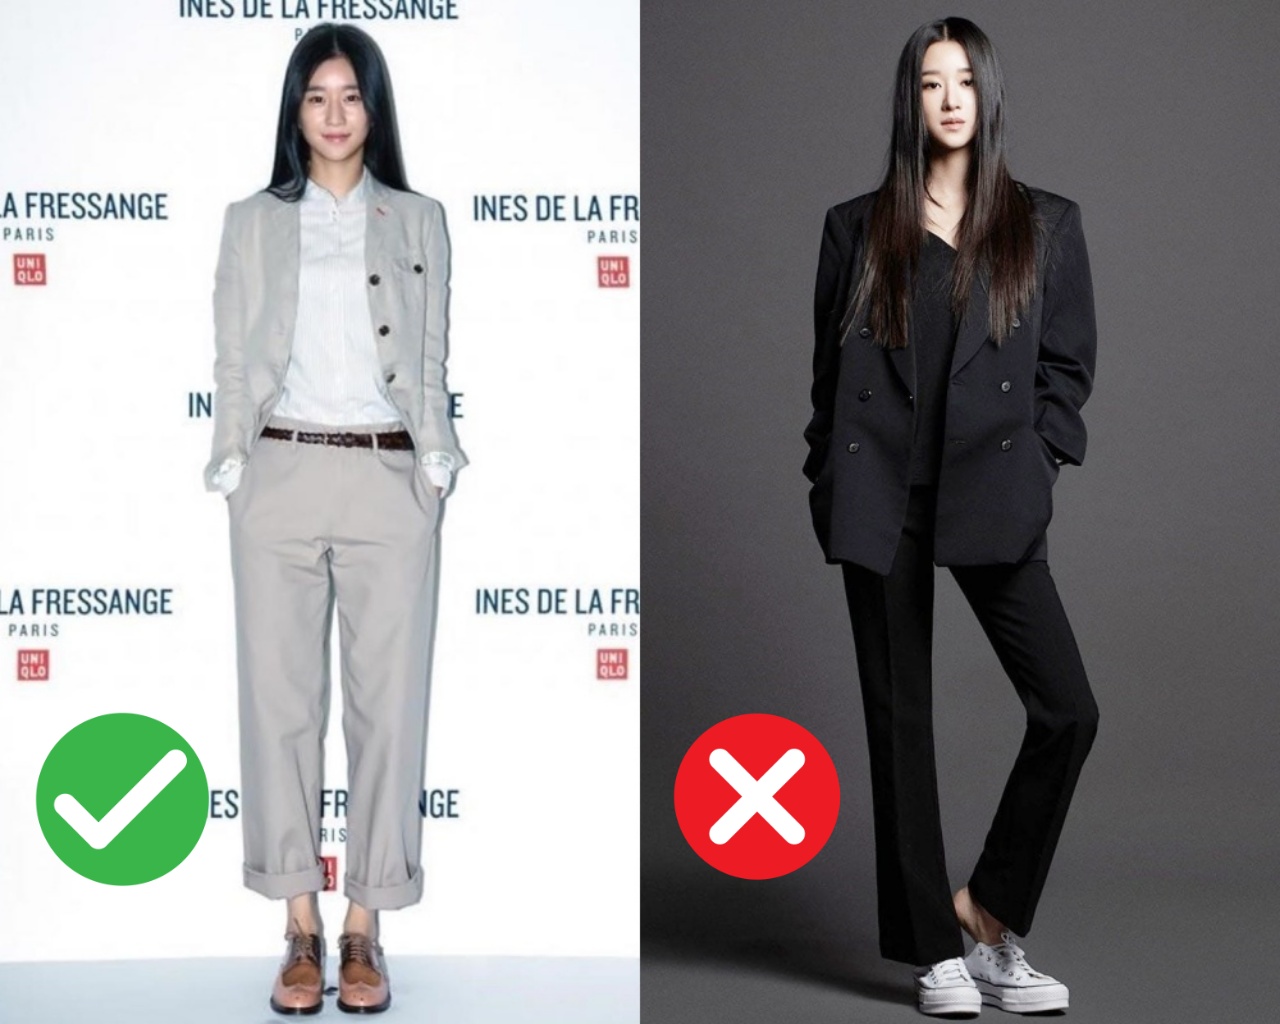 Chân dài nổi tiếng nhưng Seo Ye Ji cũng từng dìm dáng thảm hại vì chọn nhầm bộ suit khiến chân ngắn một mẩu - Ảnh 4.